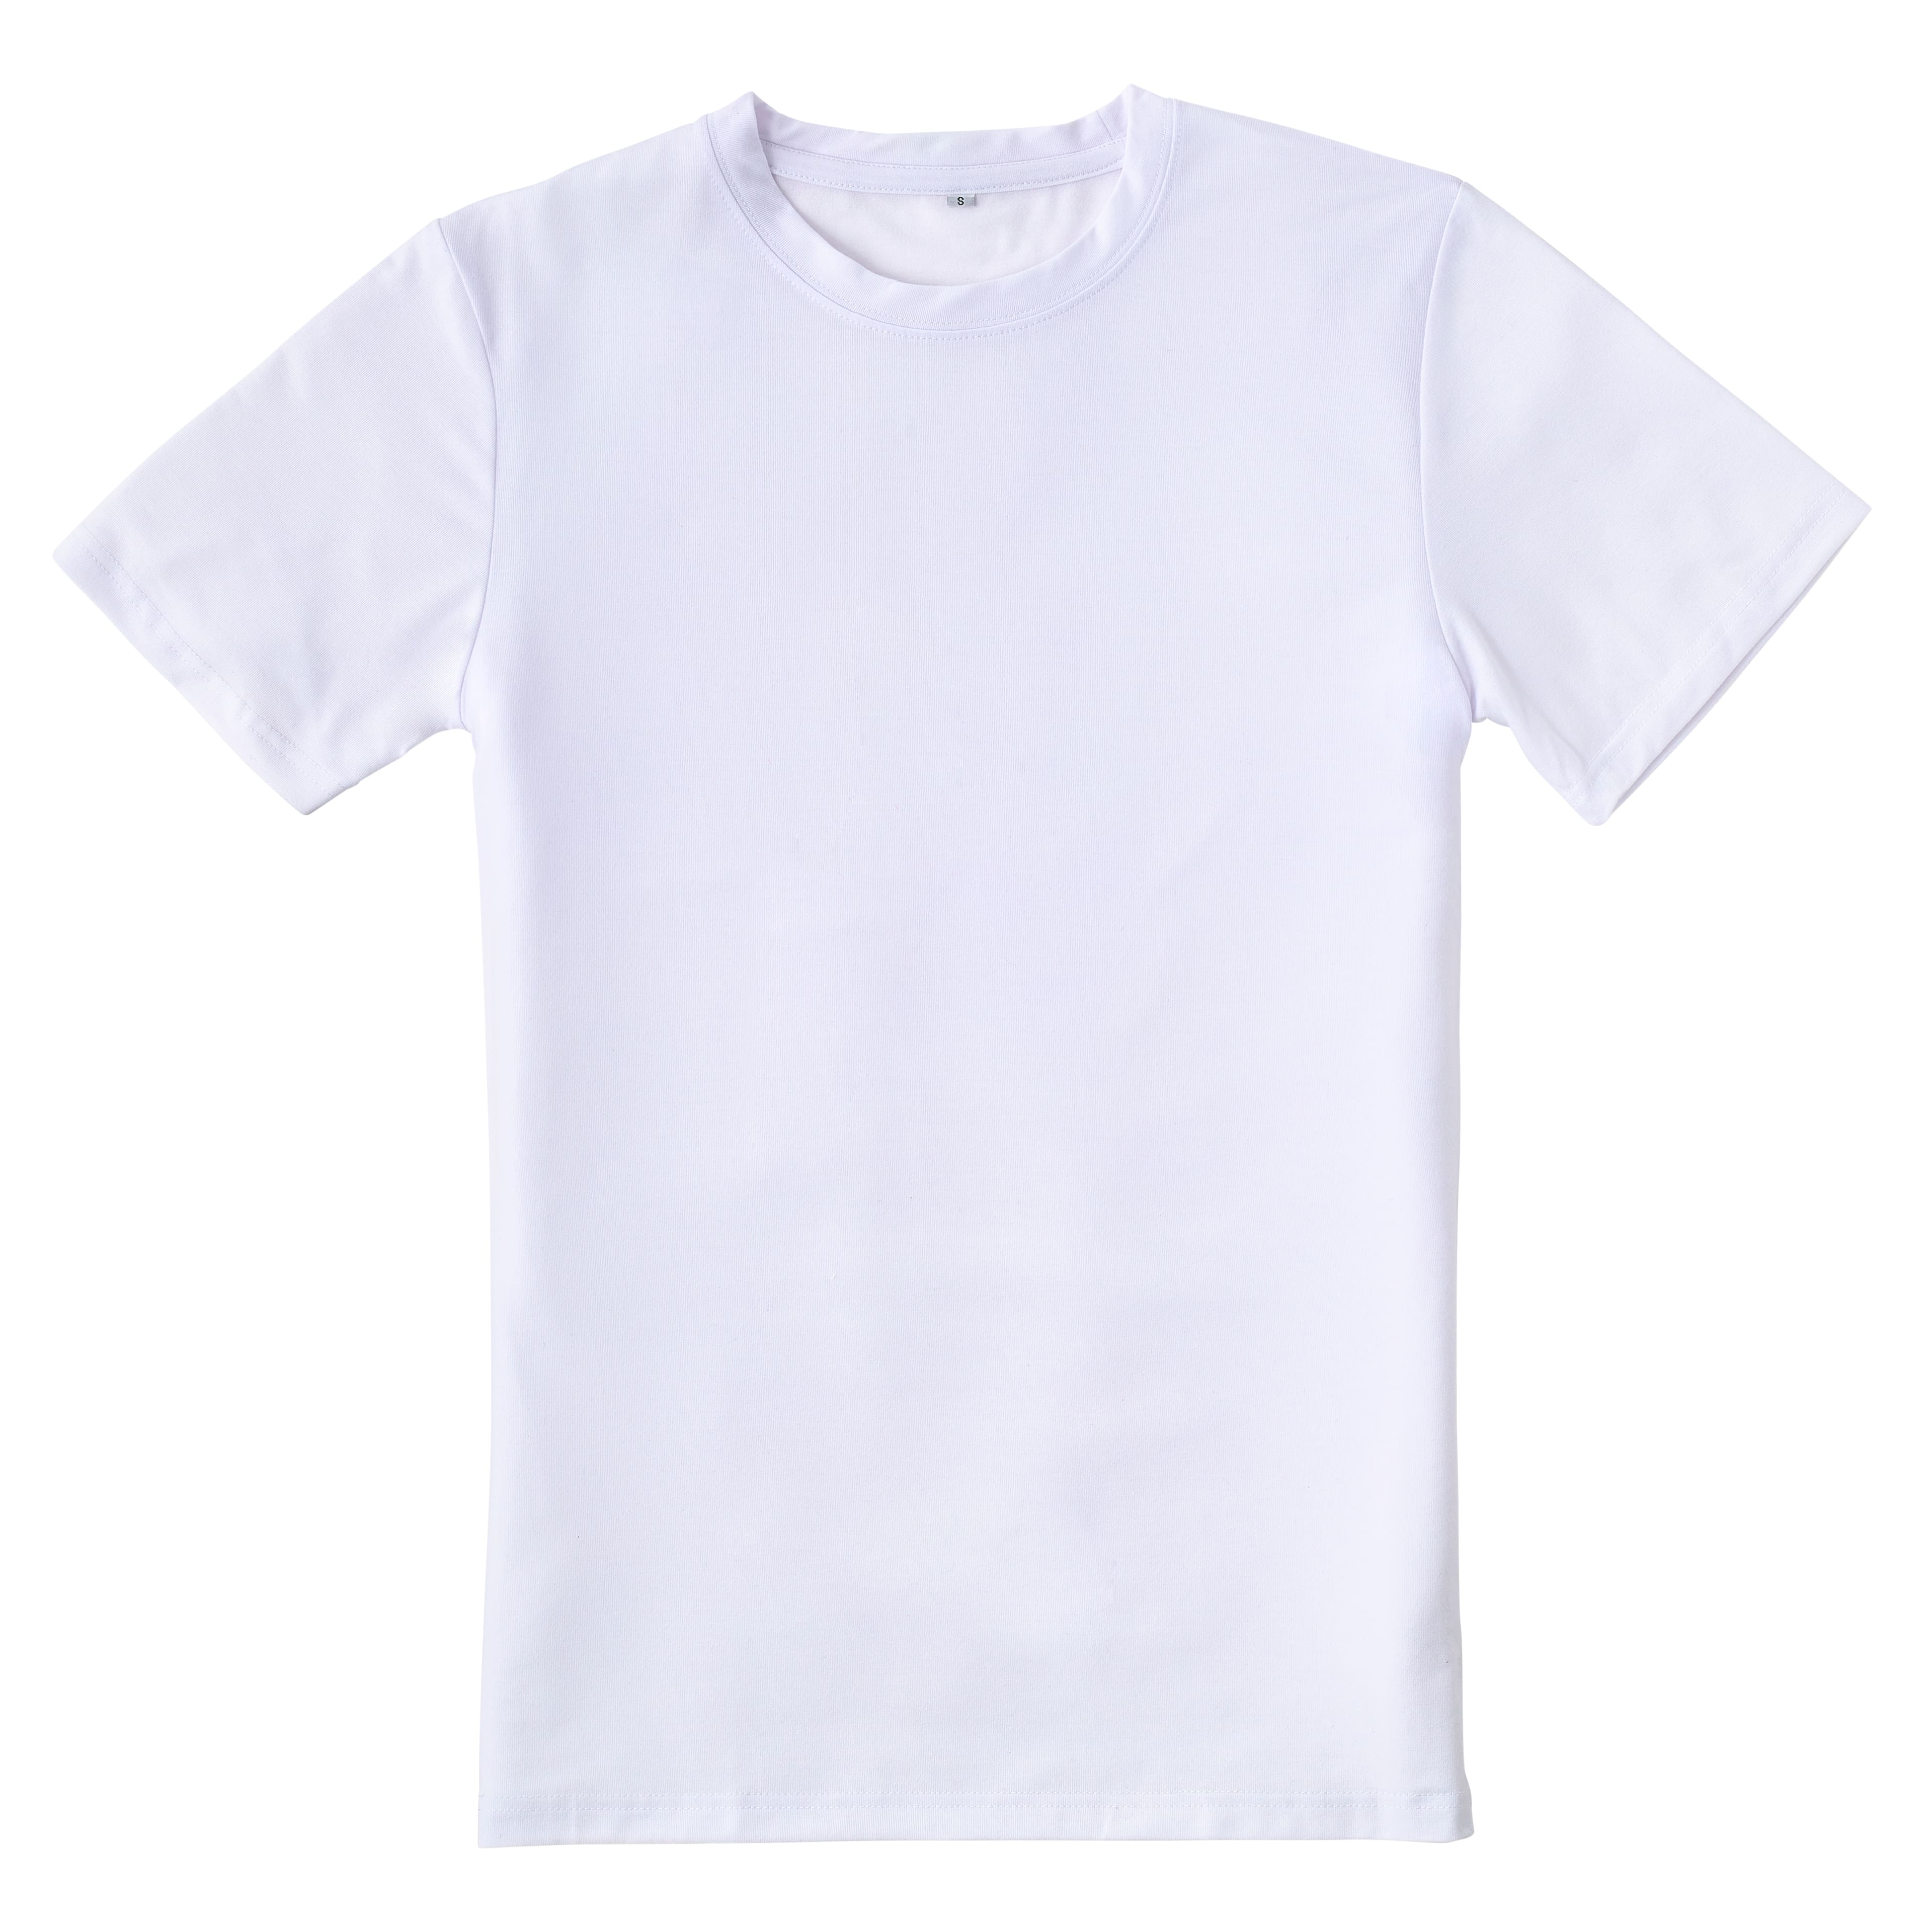 Cricut Sublimation Shirt